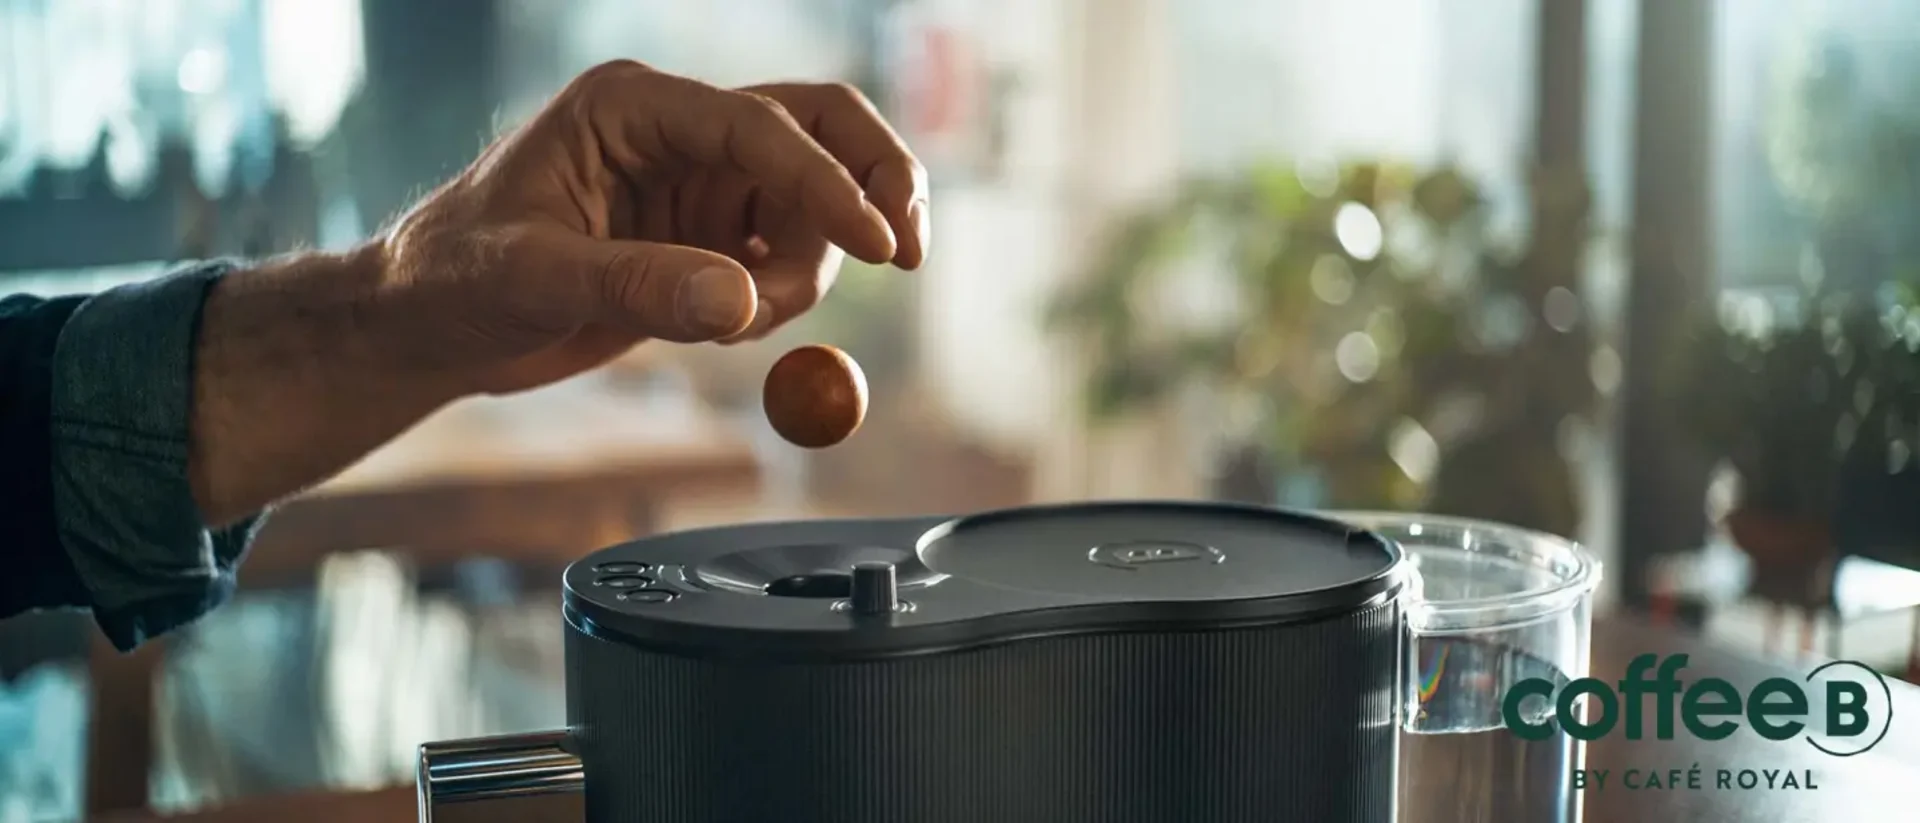 A hand throws a coffee ball into a machine.